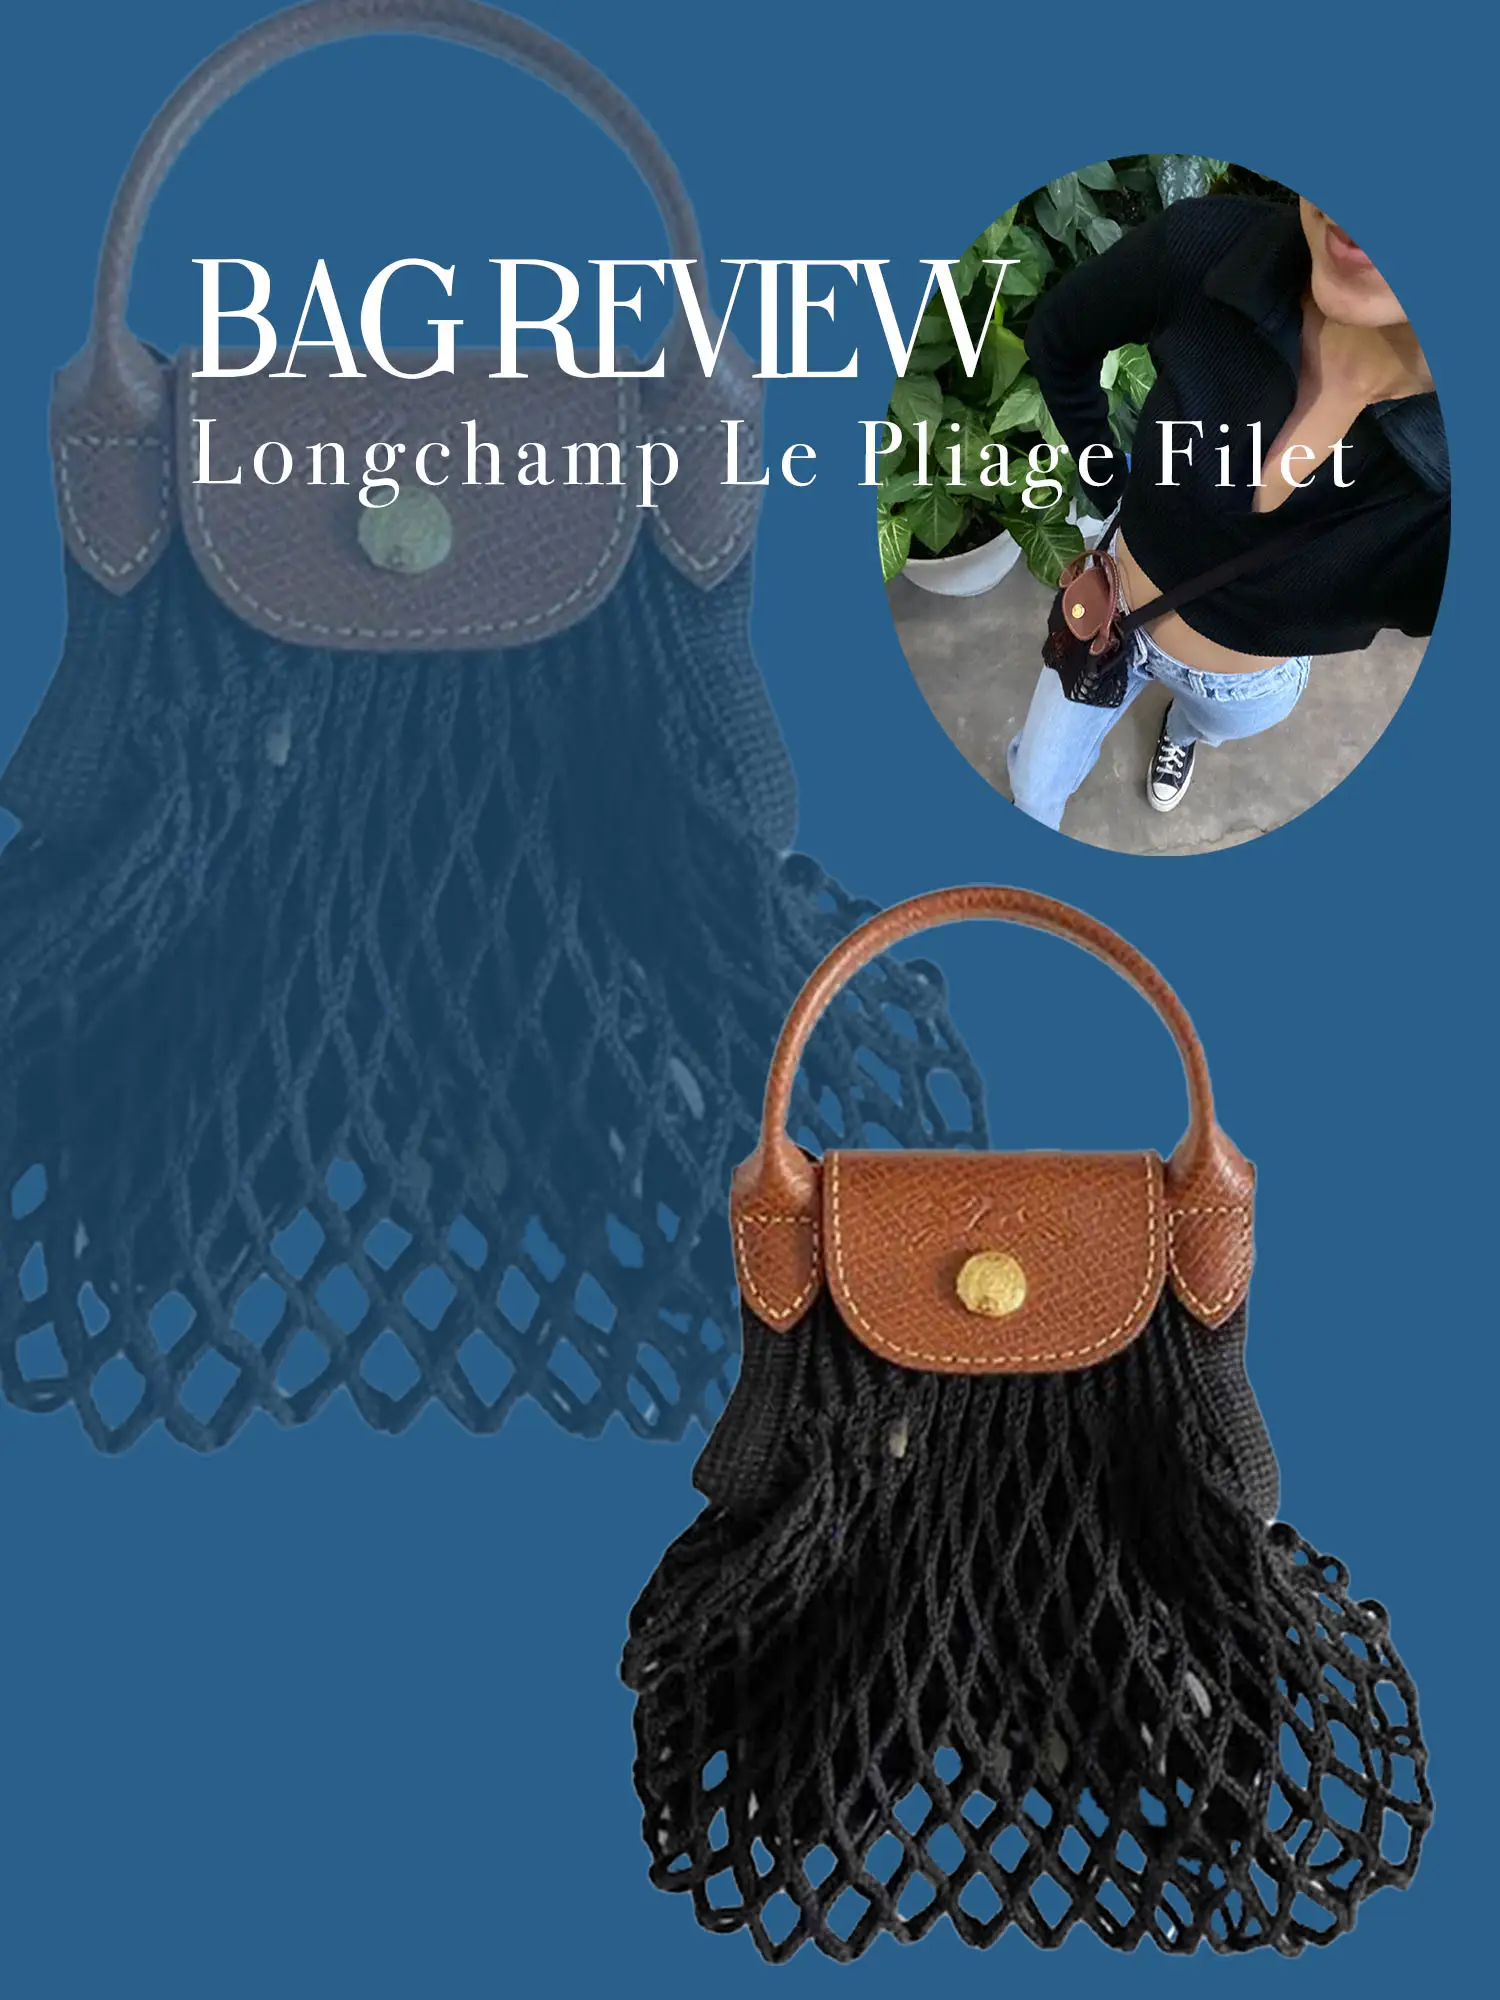 Longchamp Le Pliage Filet bag review